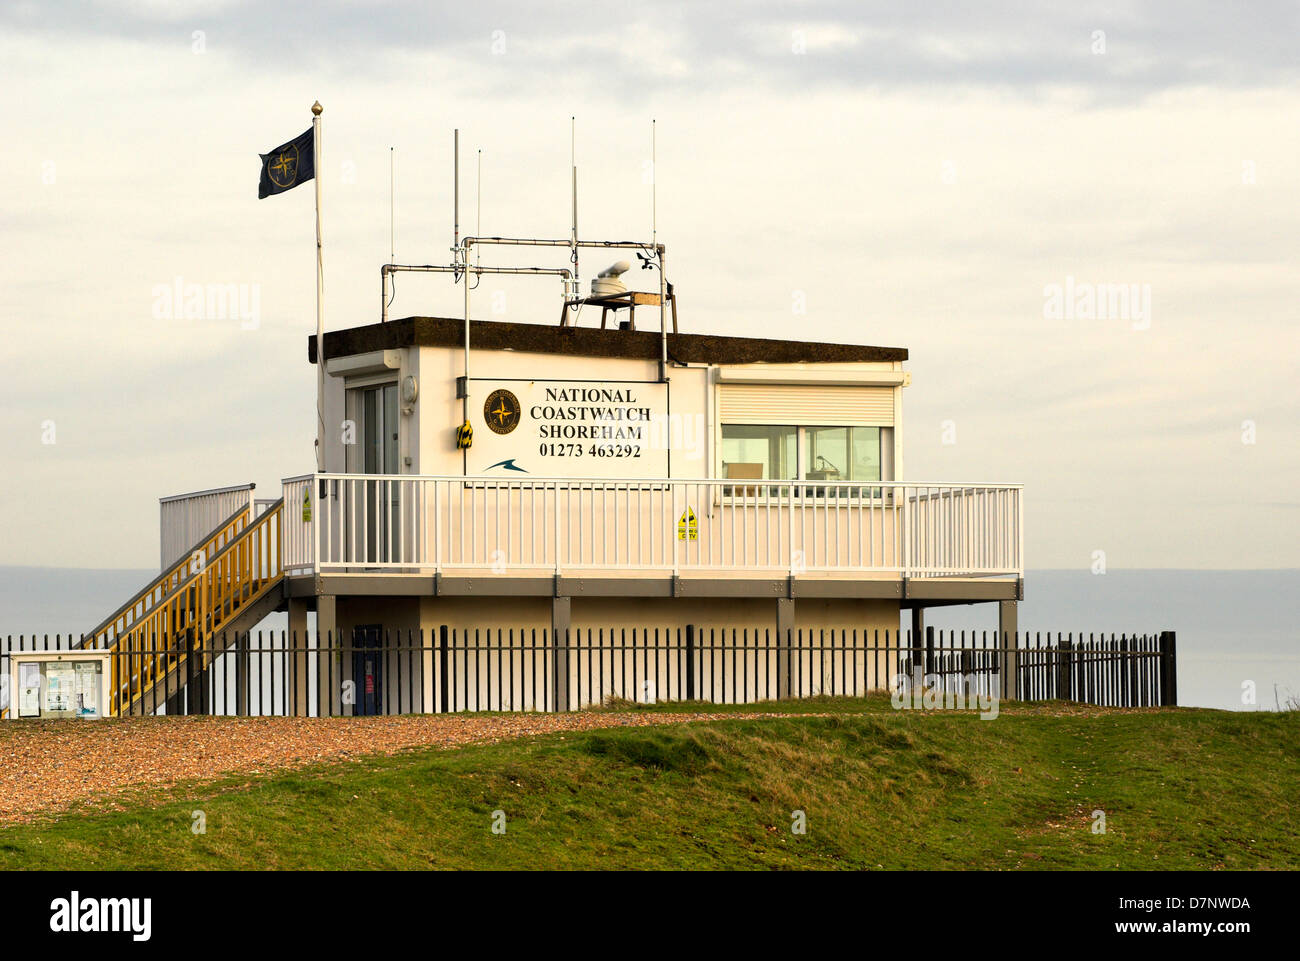 Die National Coastwatch Station am Hafen von Shoreham, West Sussex. Stockfoto